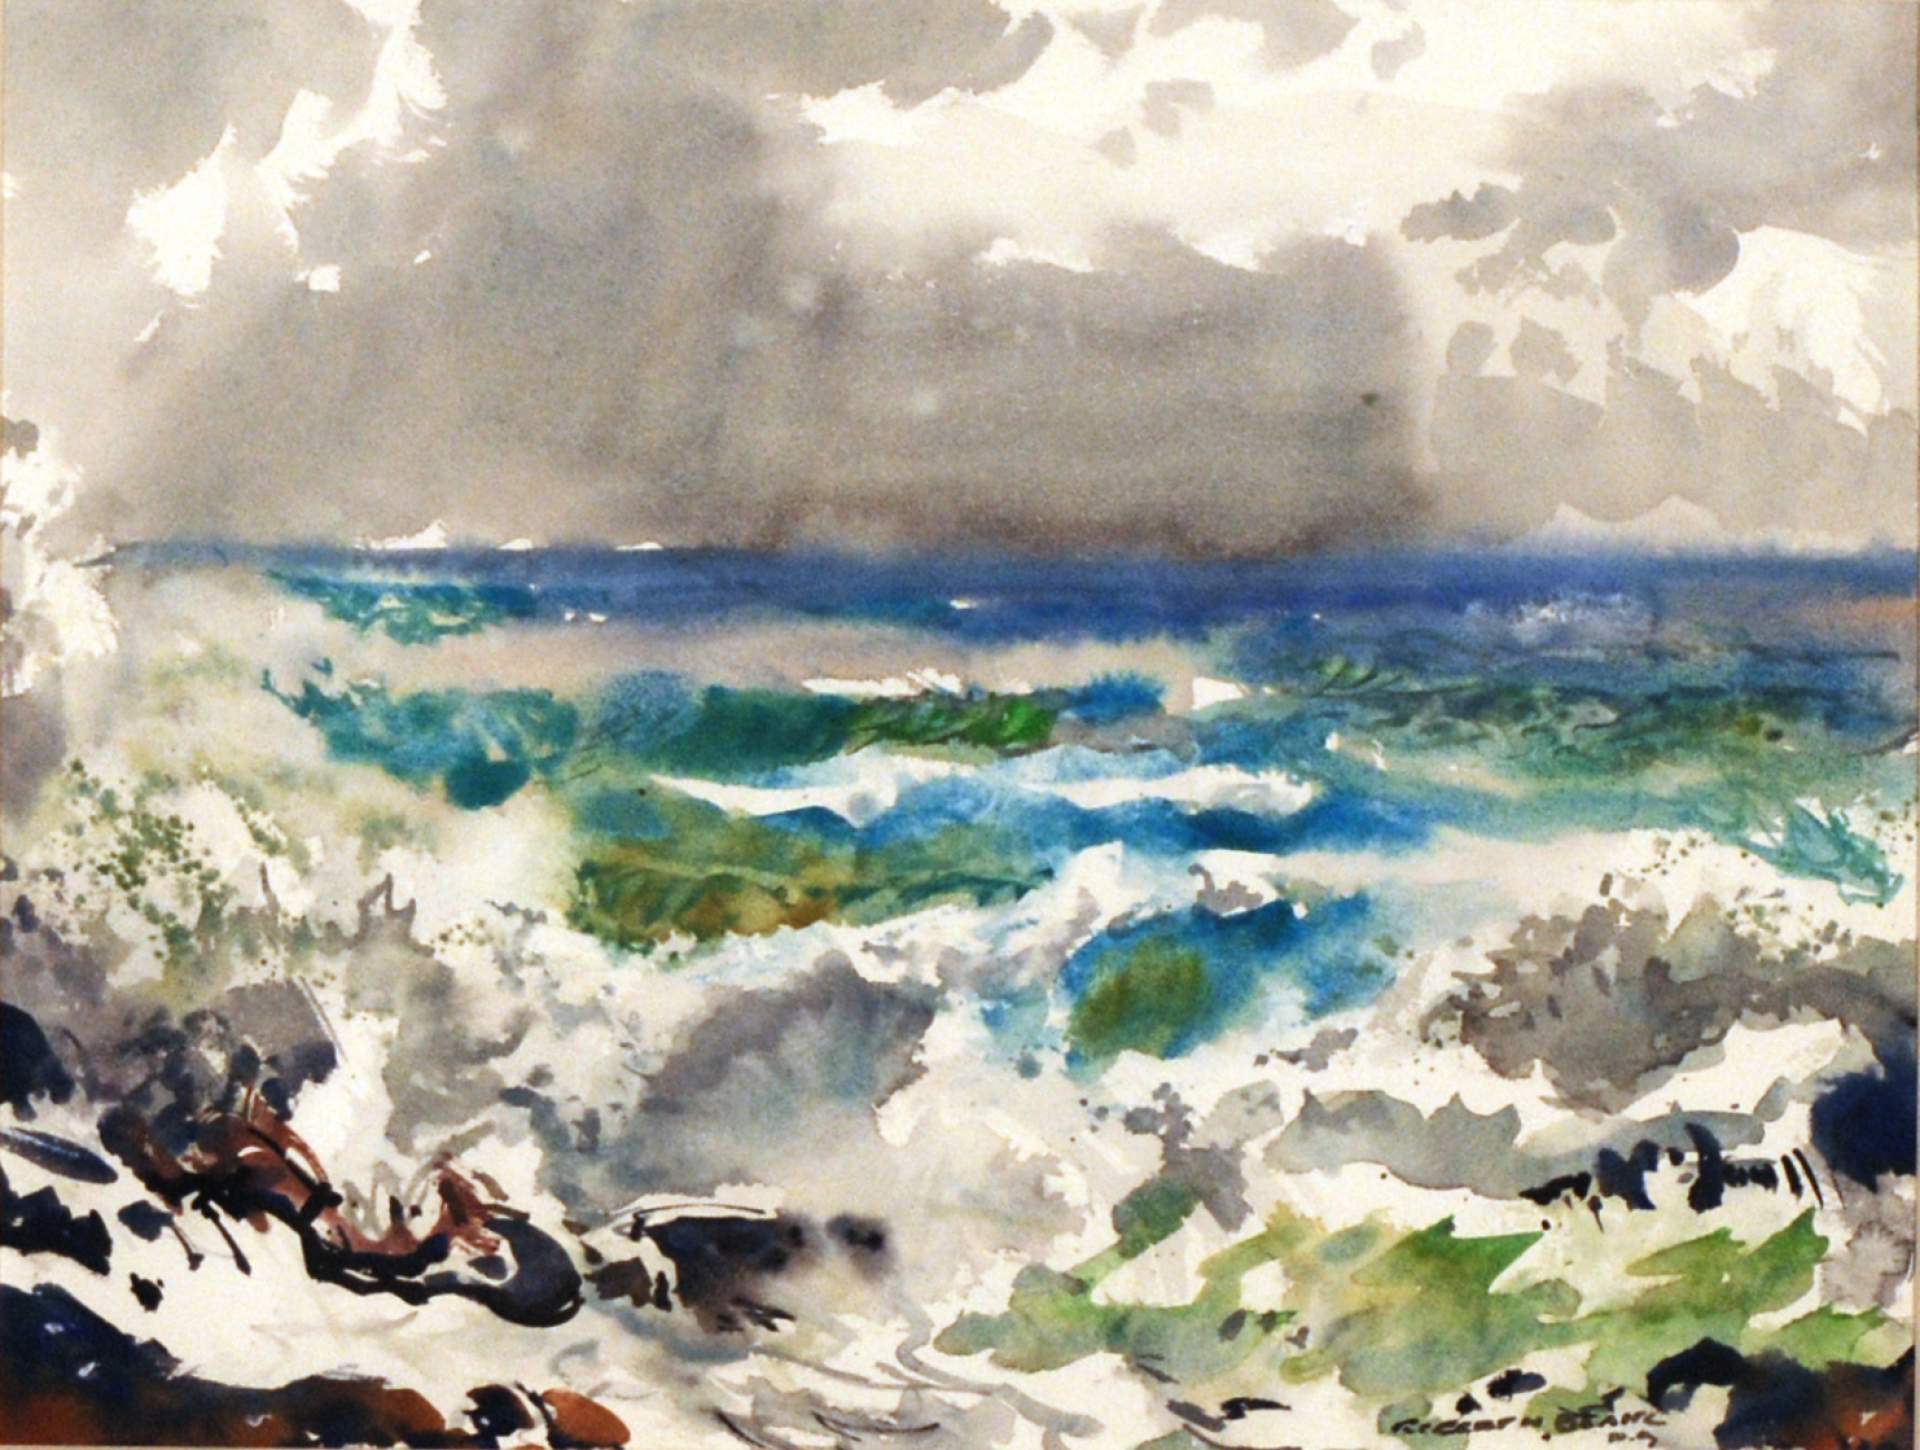 Untitled (probably northern Atlantic ocean rocky shoreline)